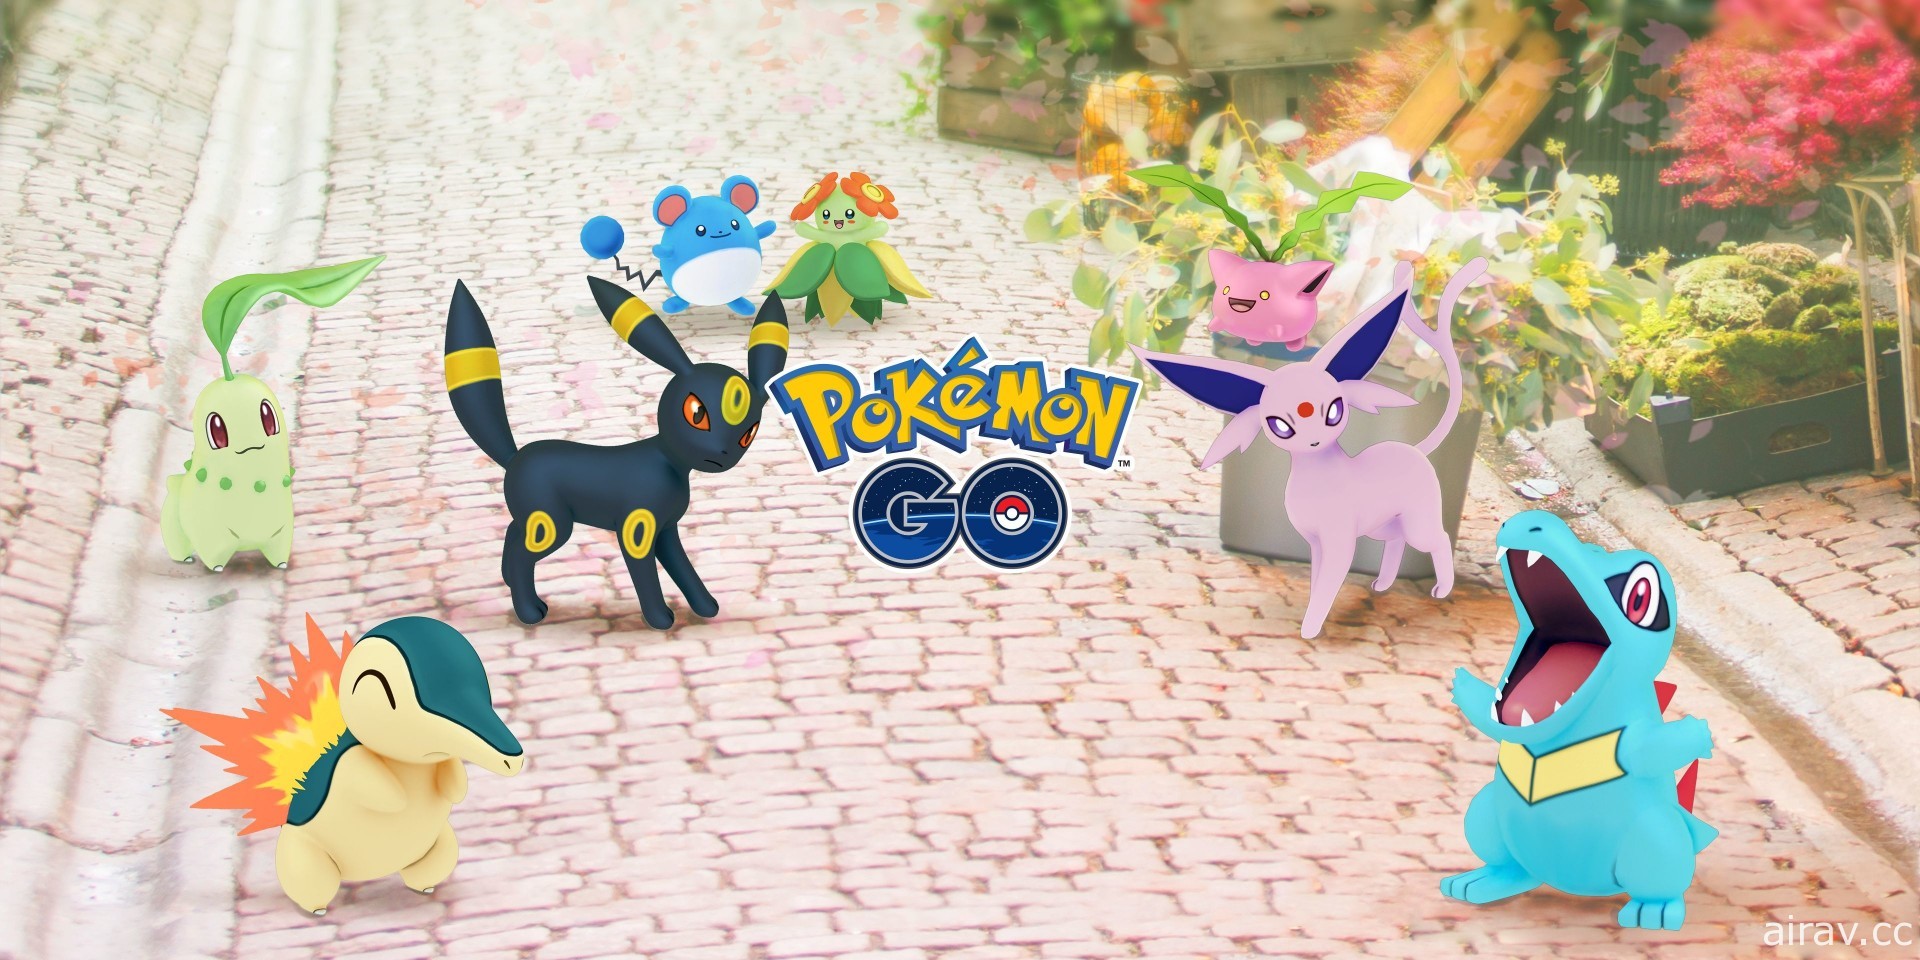 《Pokemon GO》城都地區慶祝活動即將展開 菊草葉、火球鼠等於團體戰登場